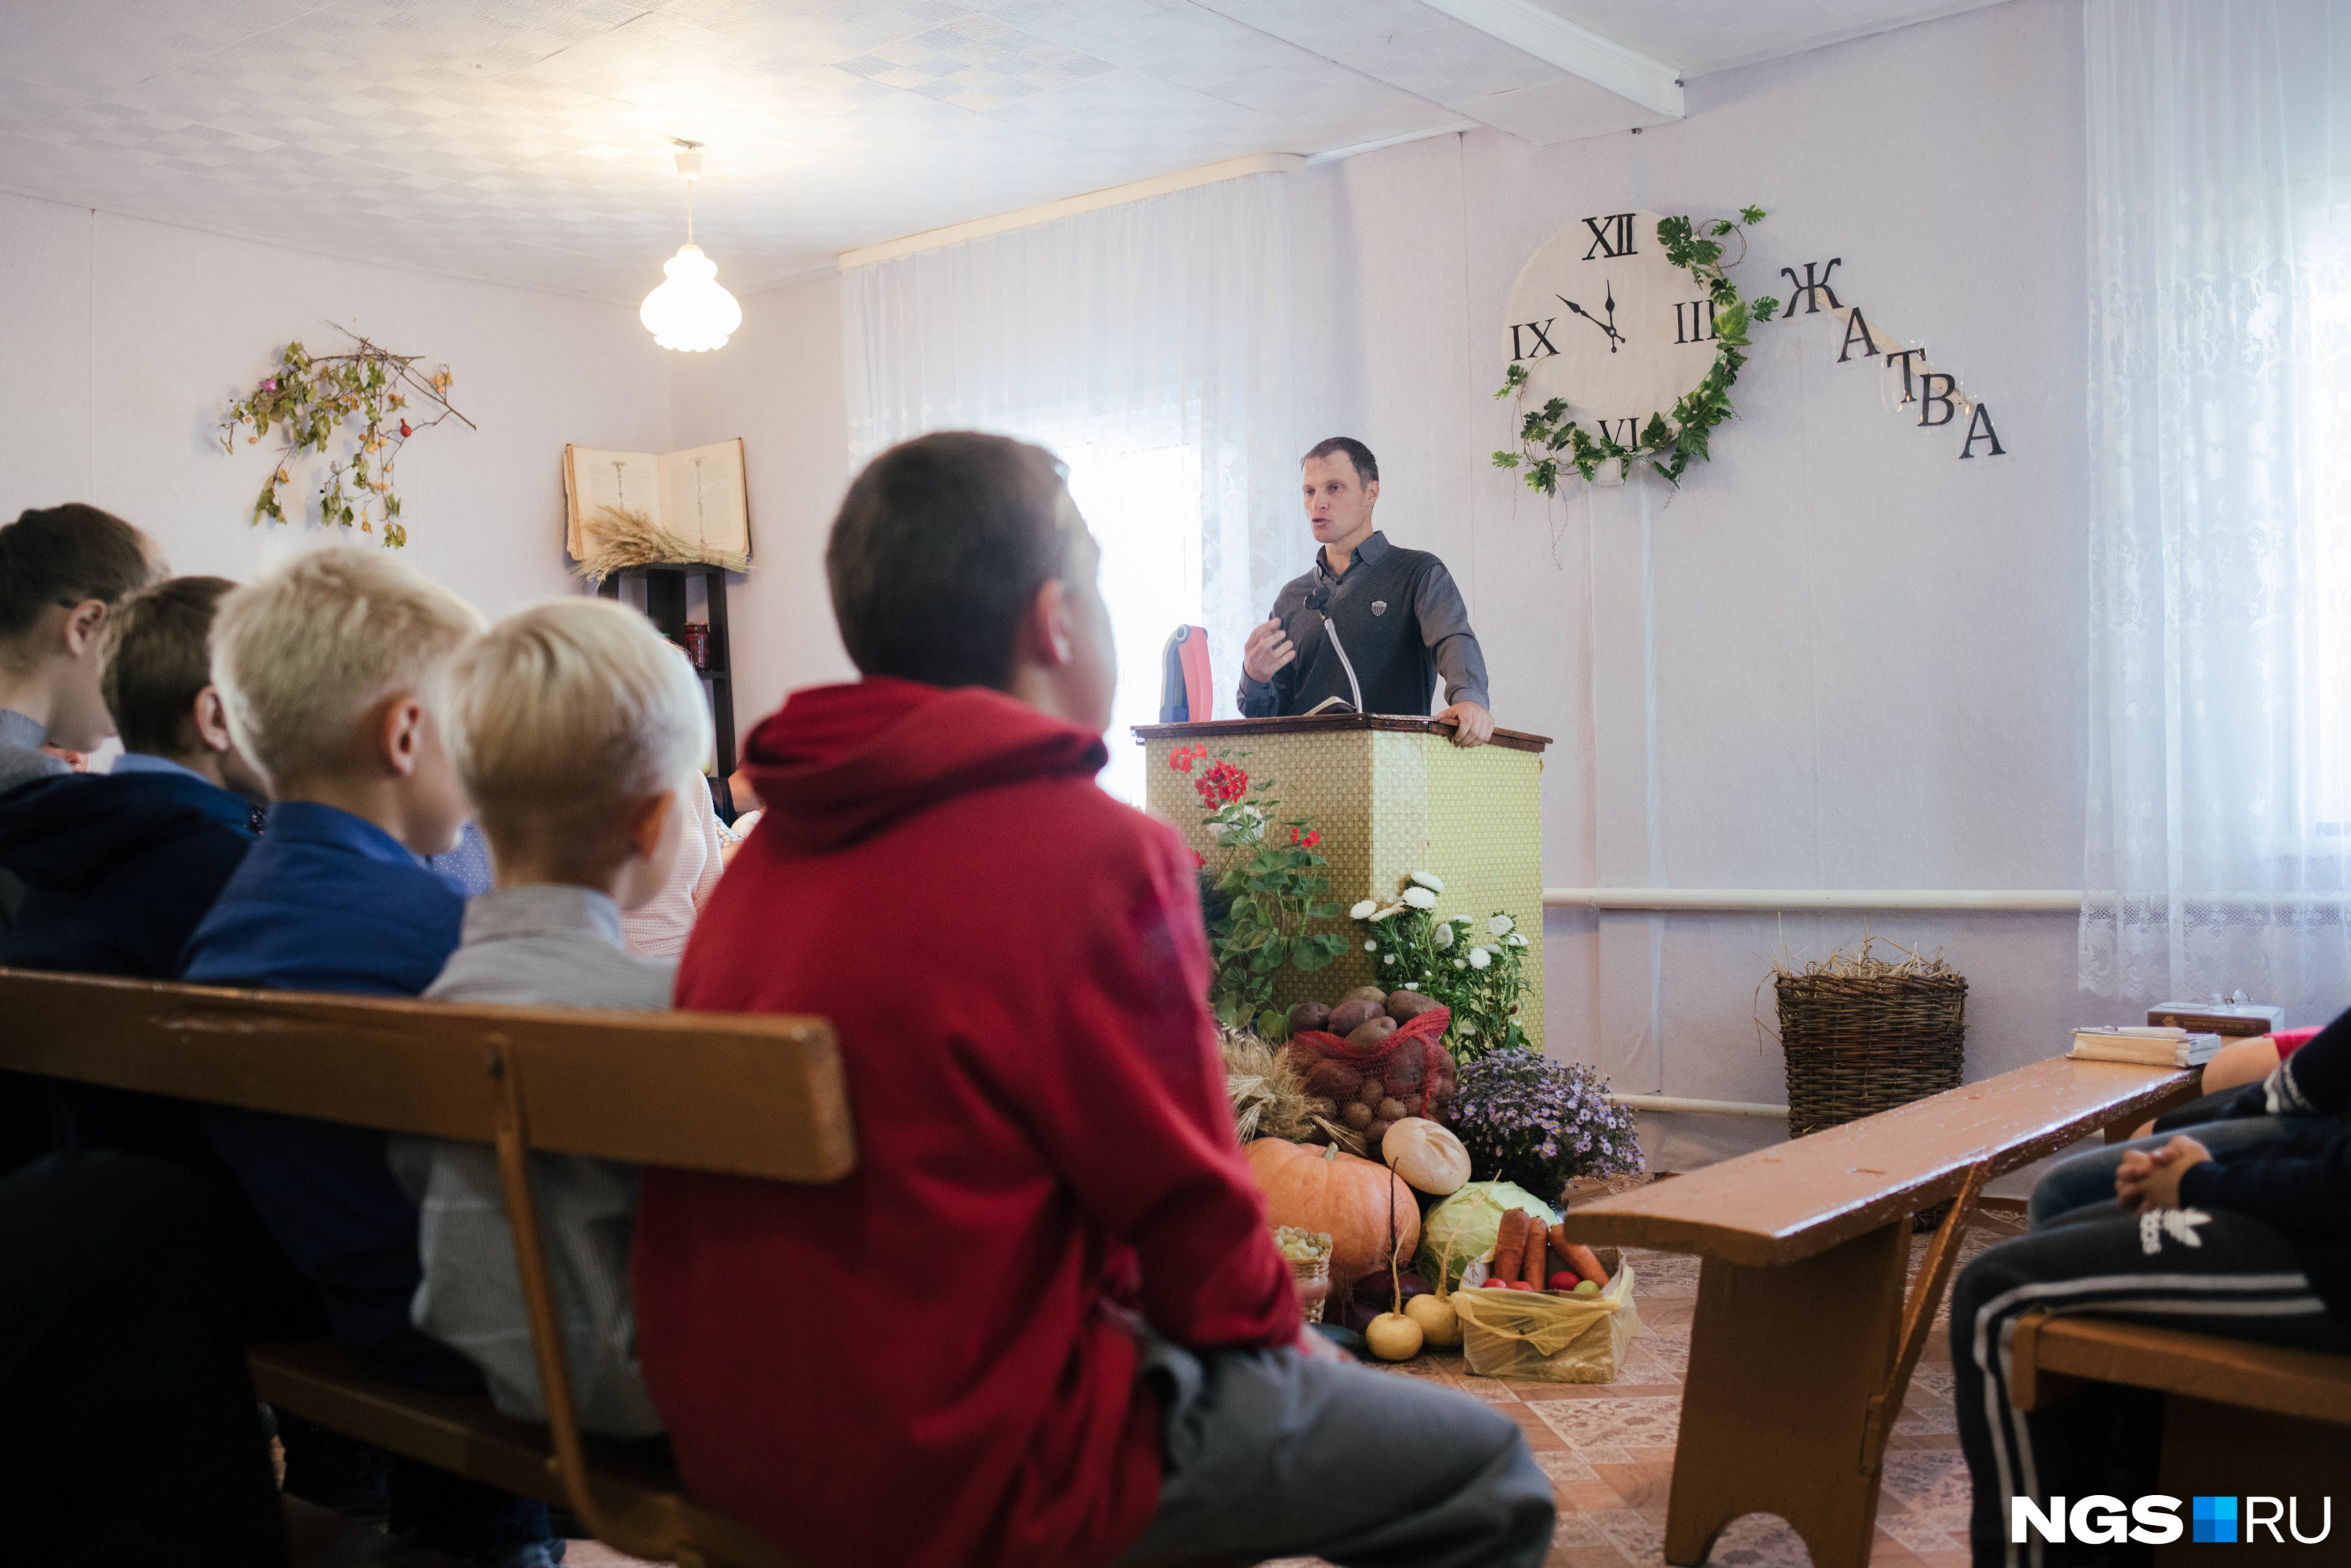 В этом году на День жатвы приехали члены соседней общины из села Солнцевка в Омской области